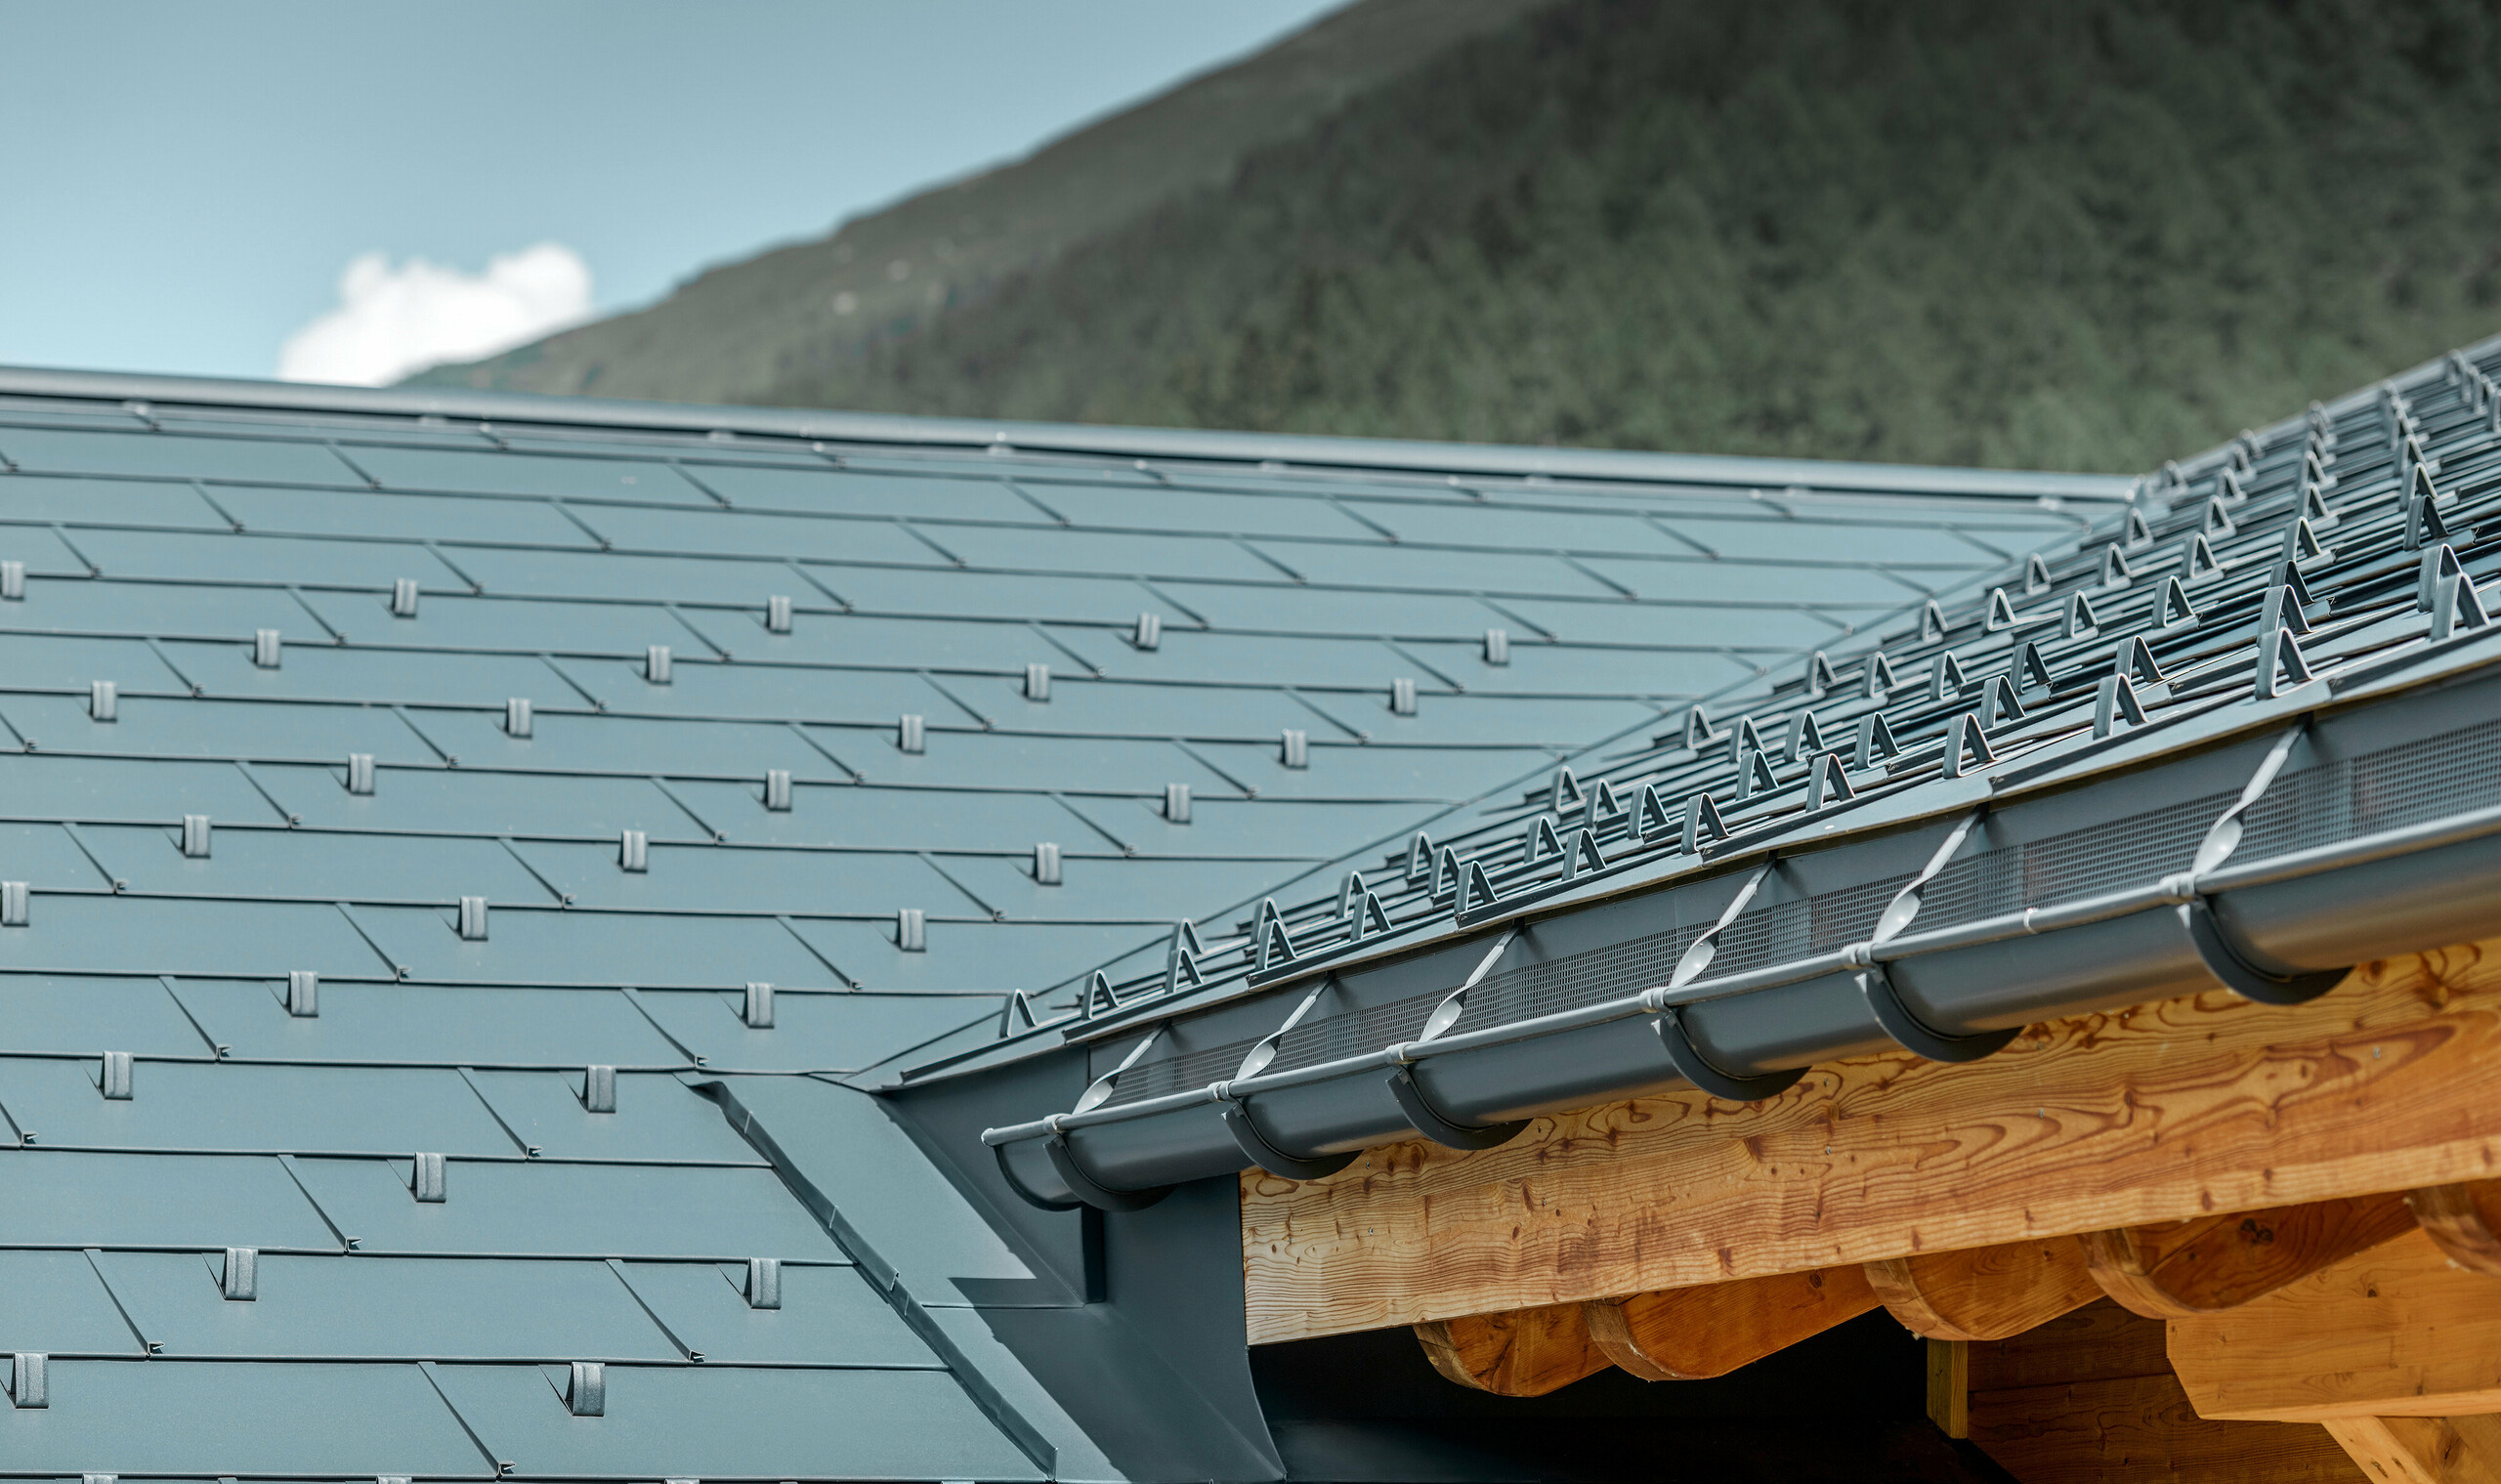 Detailansicht der neu sanierten Dachfläche mit dem PREFA Dachpaneel FX.12 in Anthrazit